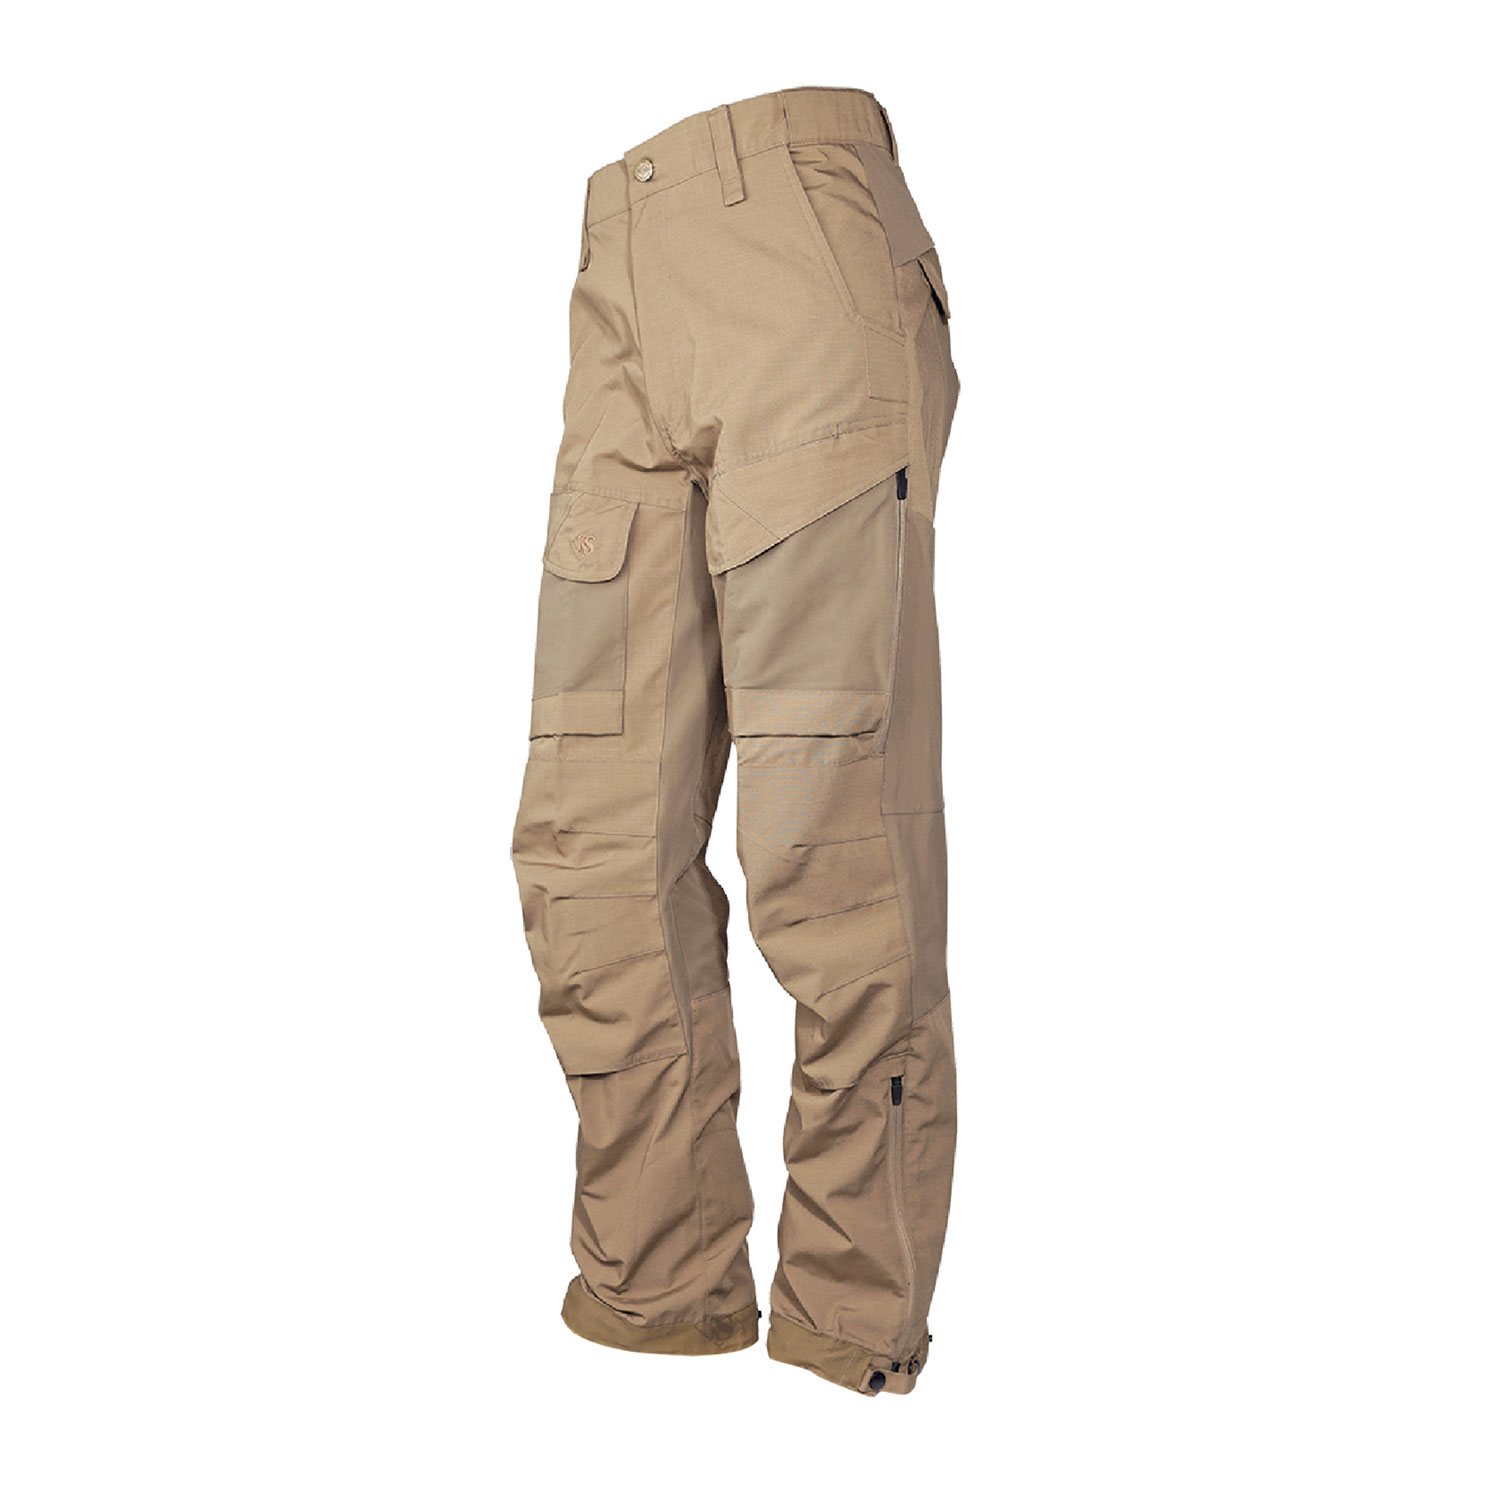 TRU SPEC 24 7 Xpedition Pants | Tactical Pants